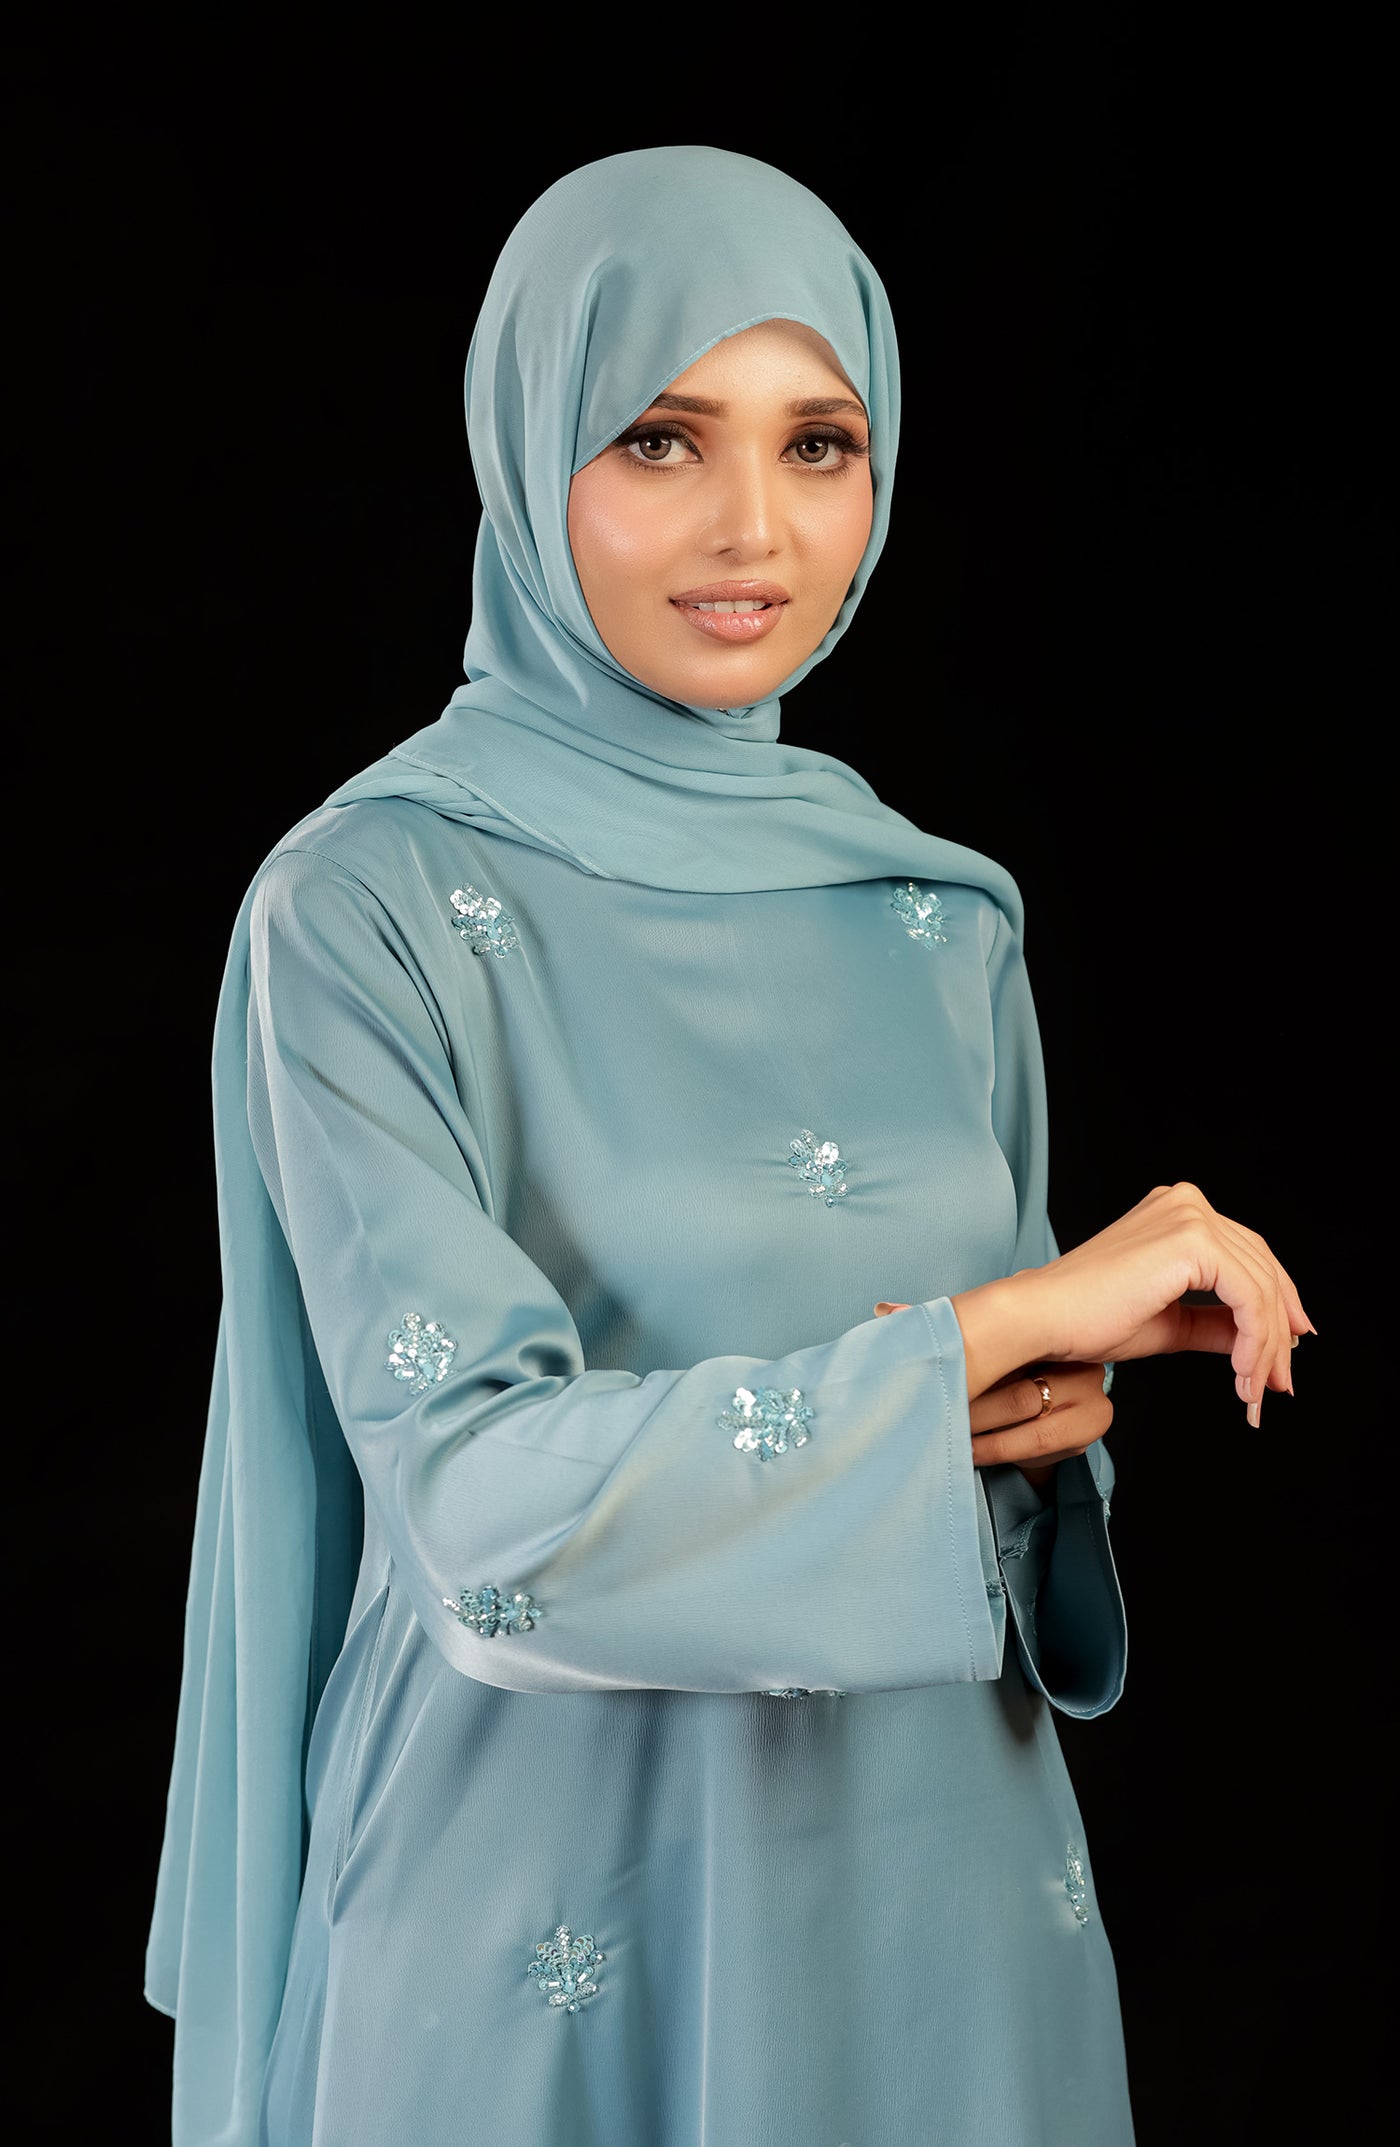 hand embellished abaya in sky blue color